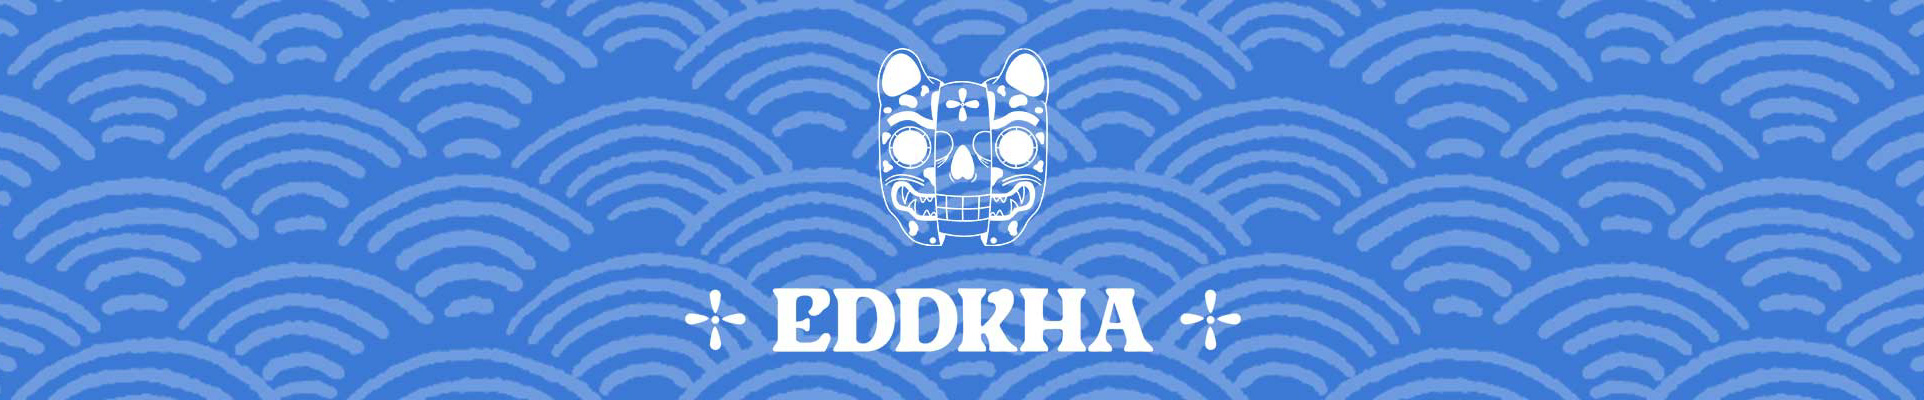 Bannière de profil de Eddkha .